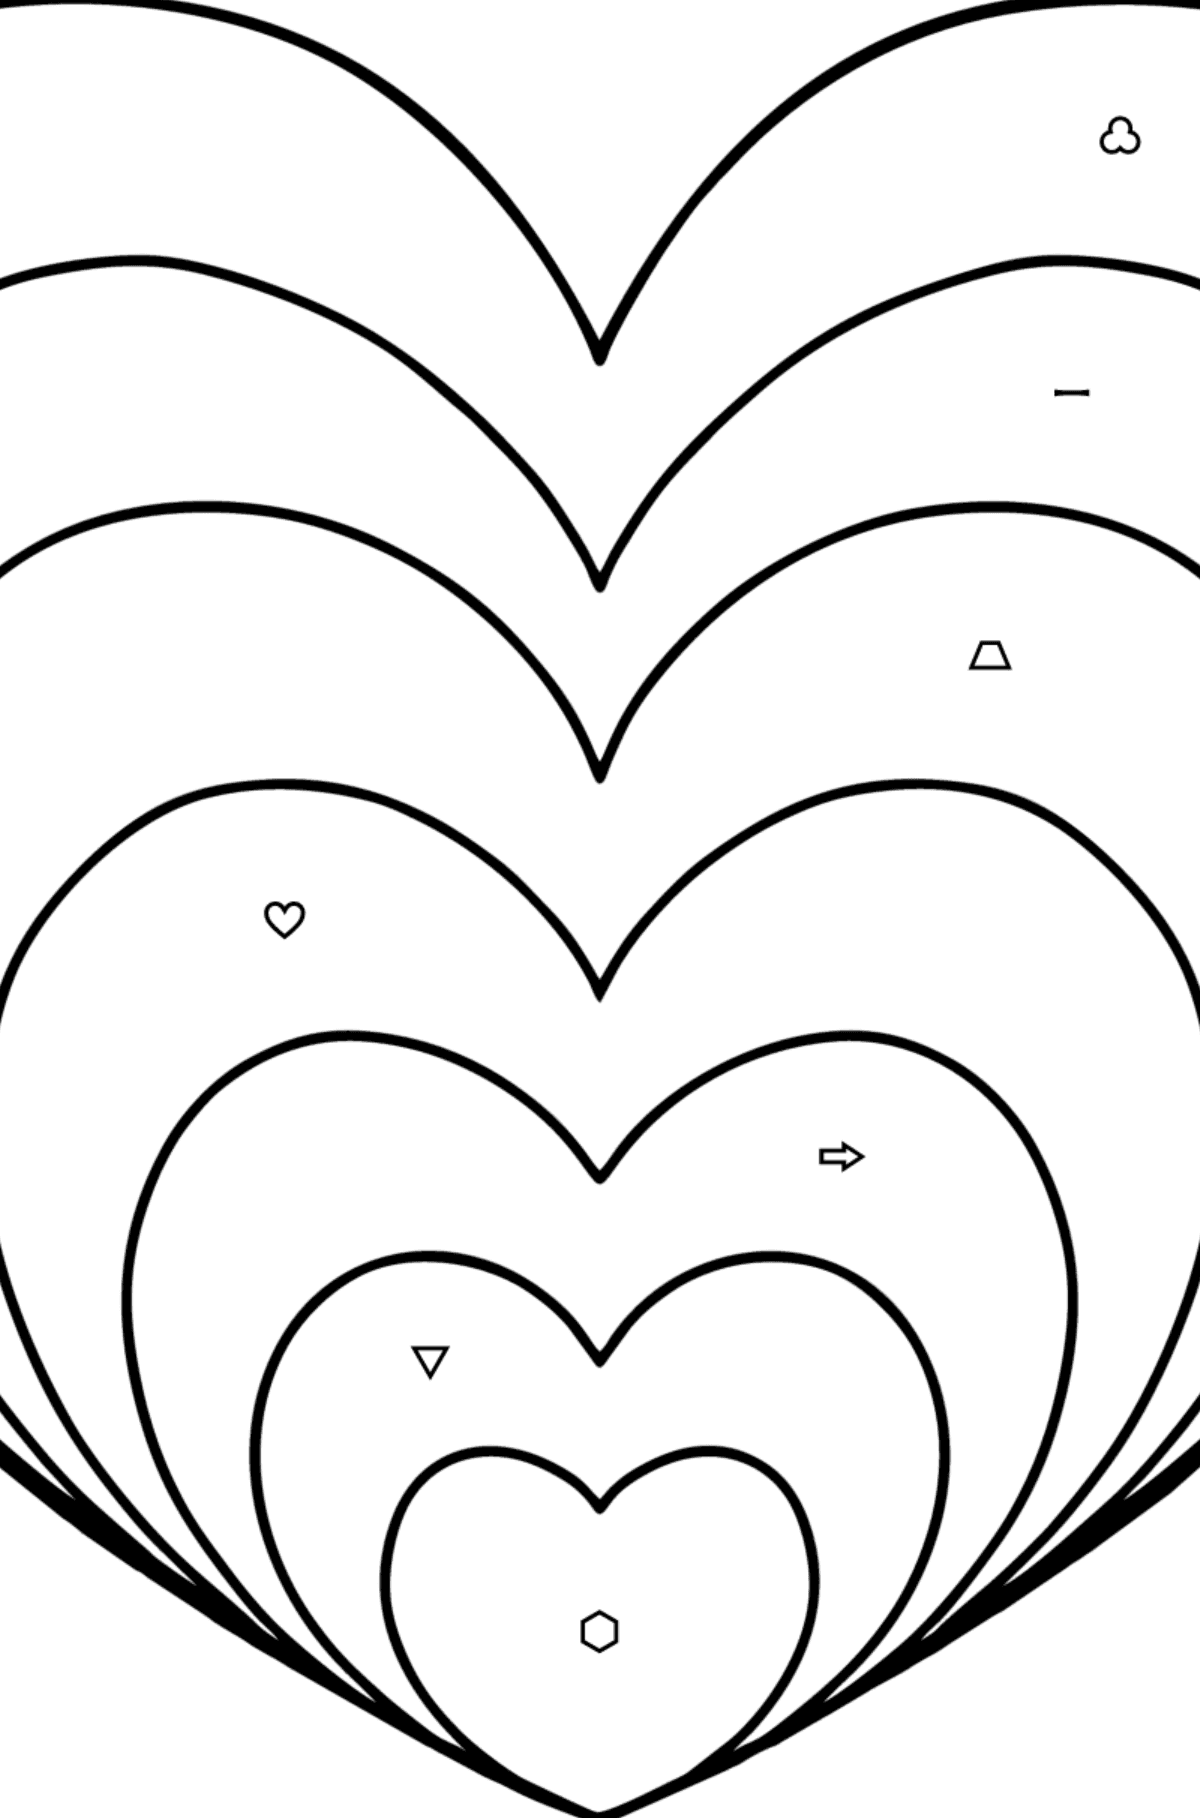 Tegning til fargelegging Hjerte i ZEN-stil - Fargelegge etter symboler og geometriske former for barn